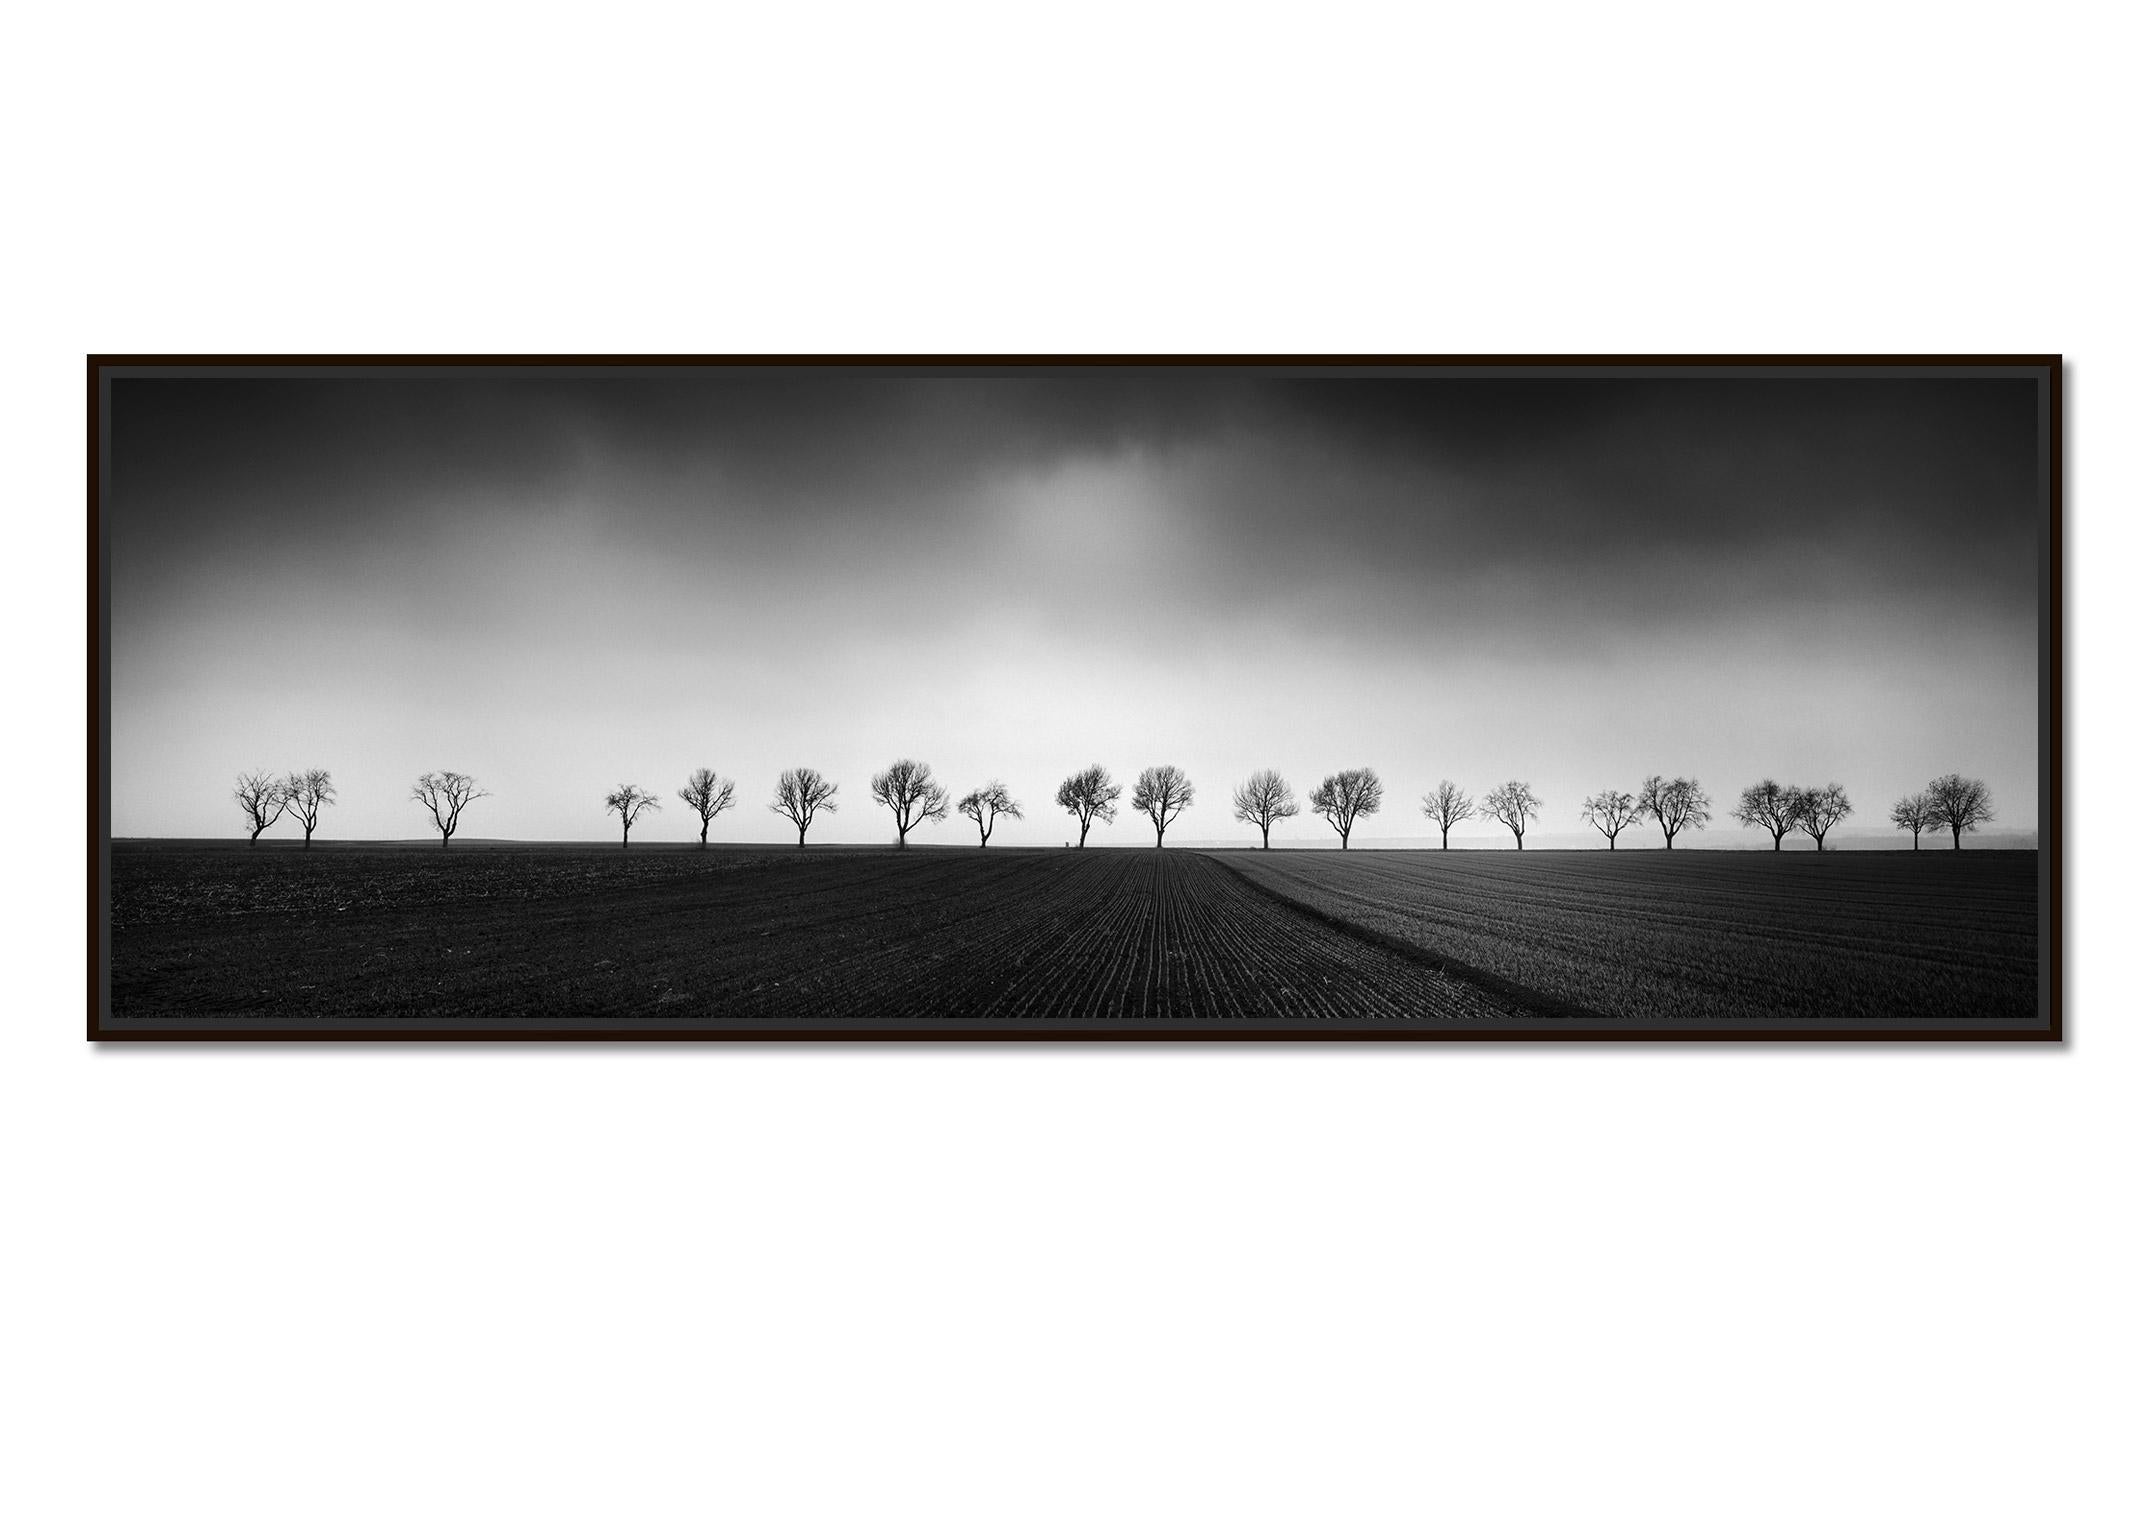 Vingt cerisiers Avenue noir et blanc panorama paysage photographie d'art - Photograph de Gerald Berghammer